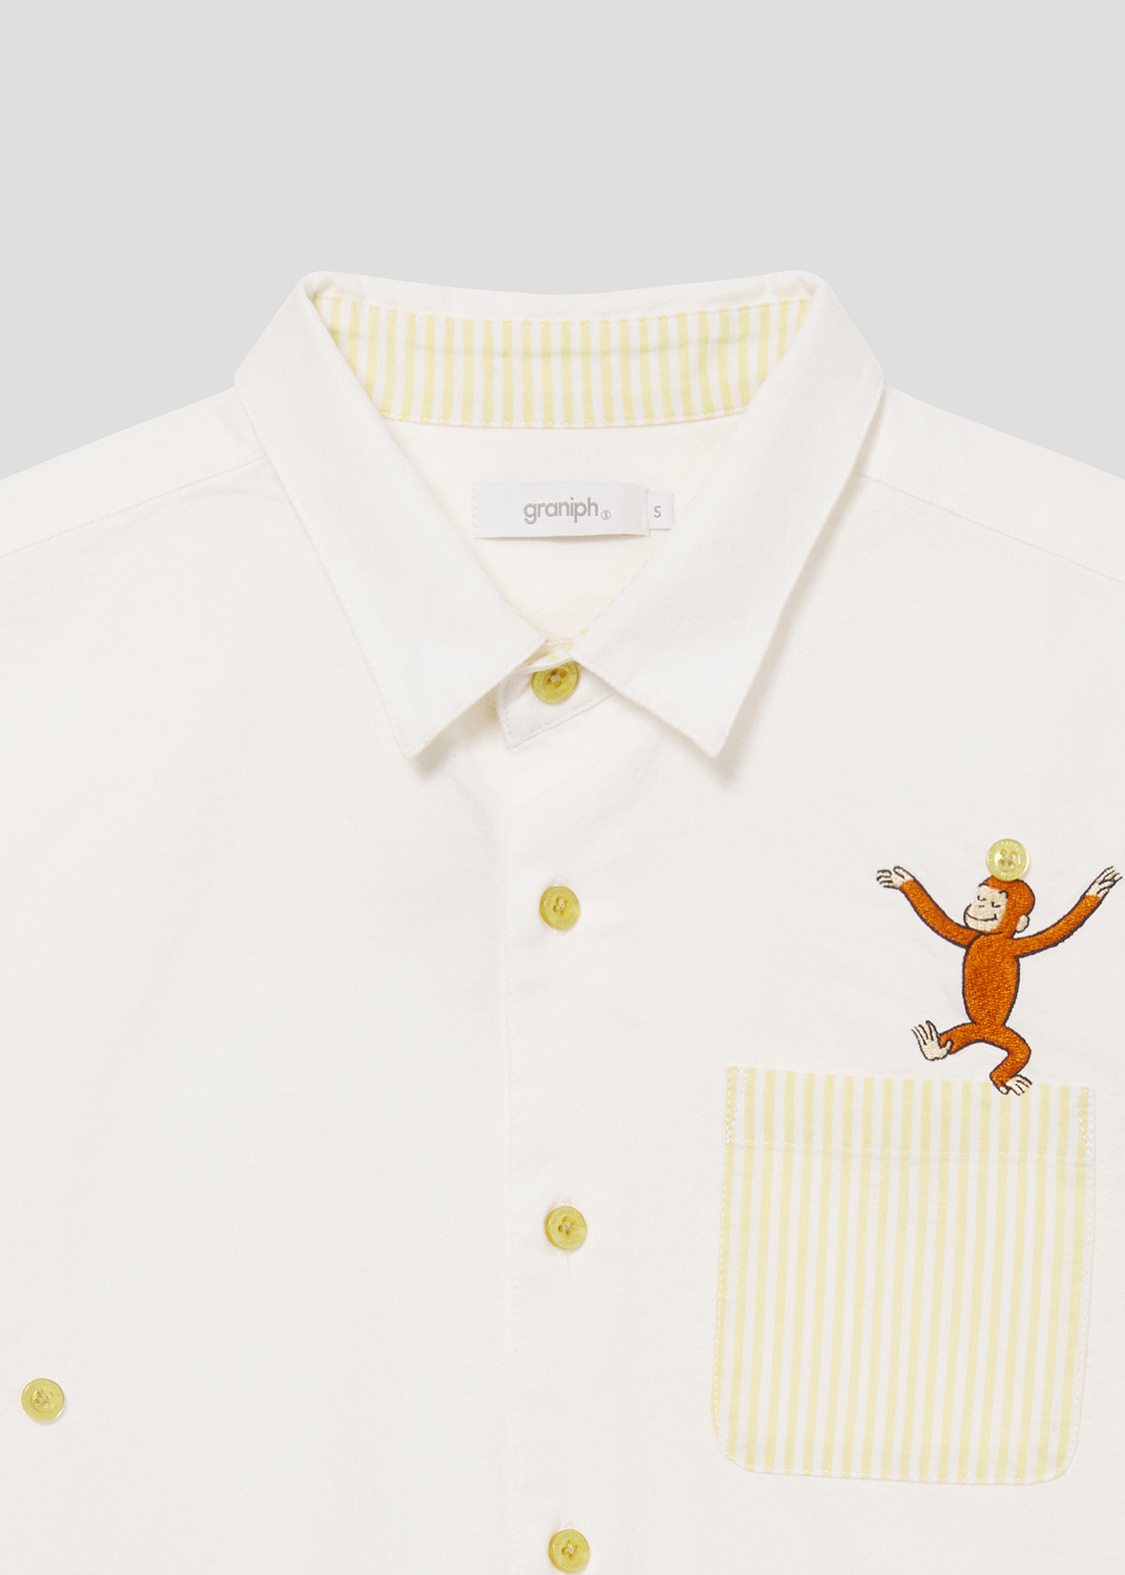 「おさるのジョージ」コラボレーション 半袖シャツ「ボール」デザインアップ